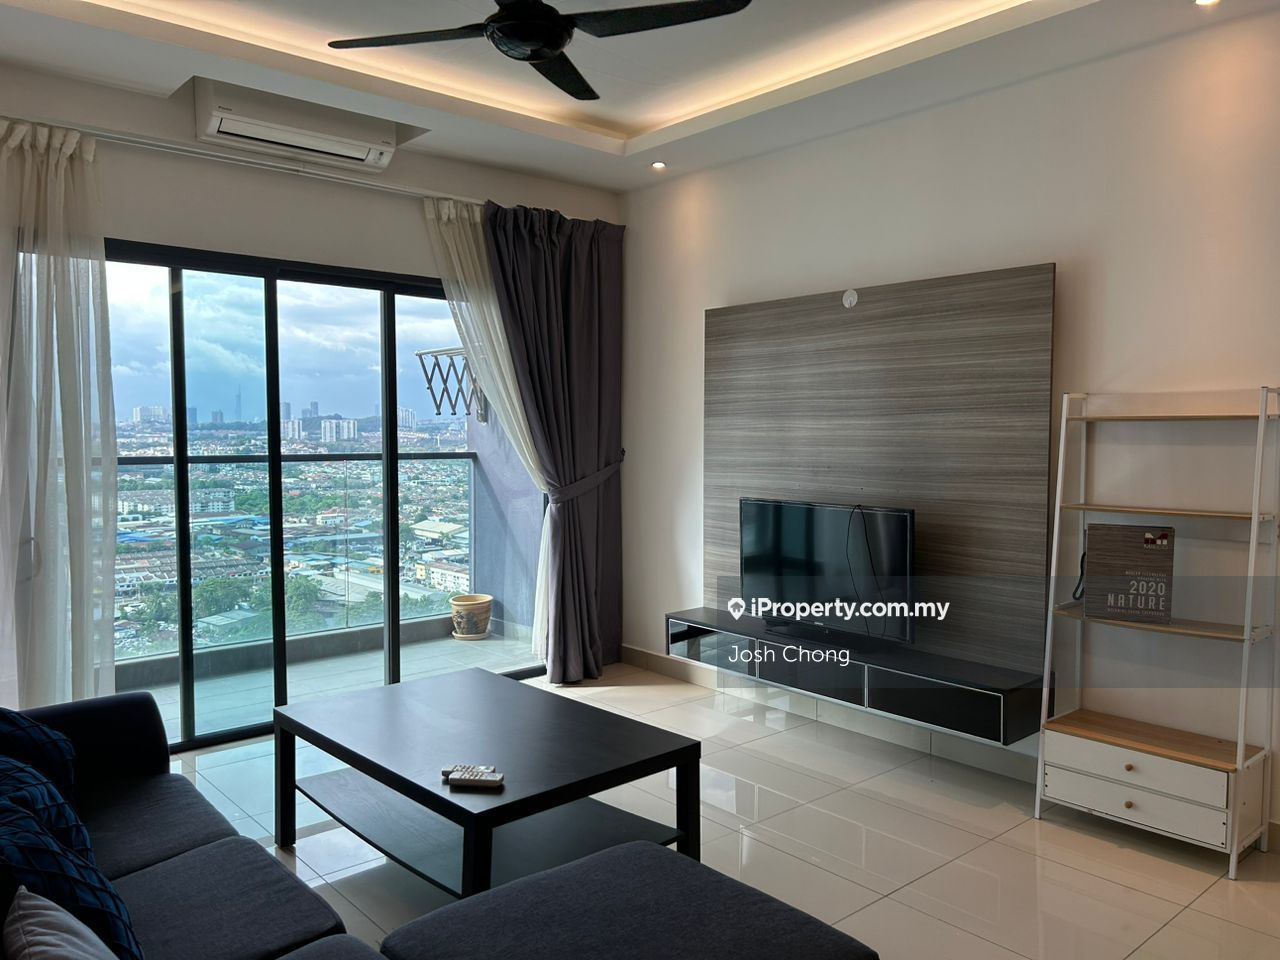 Landmark Residence 2 Serviced Residence 3 bedrooms for sale in Bandar